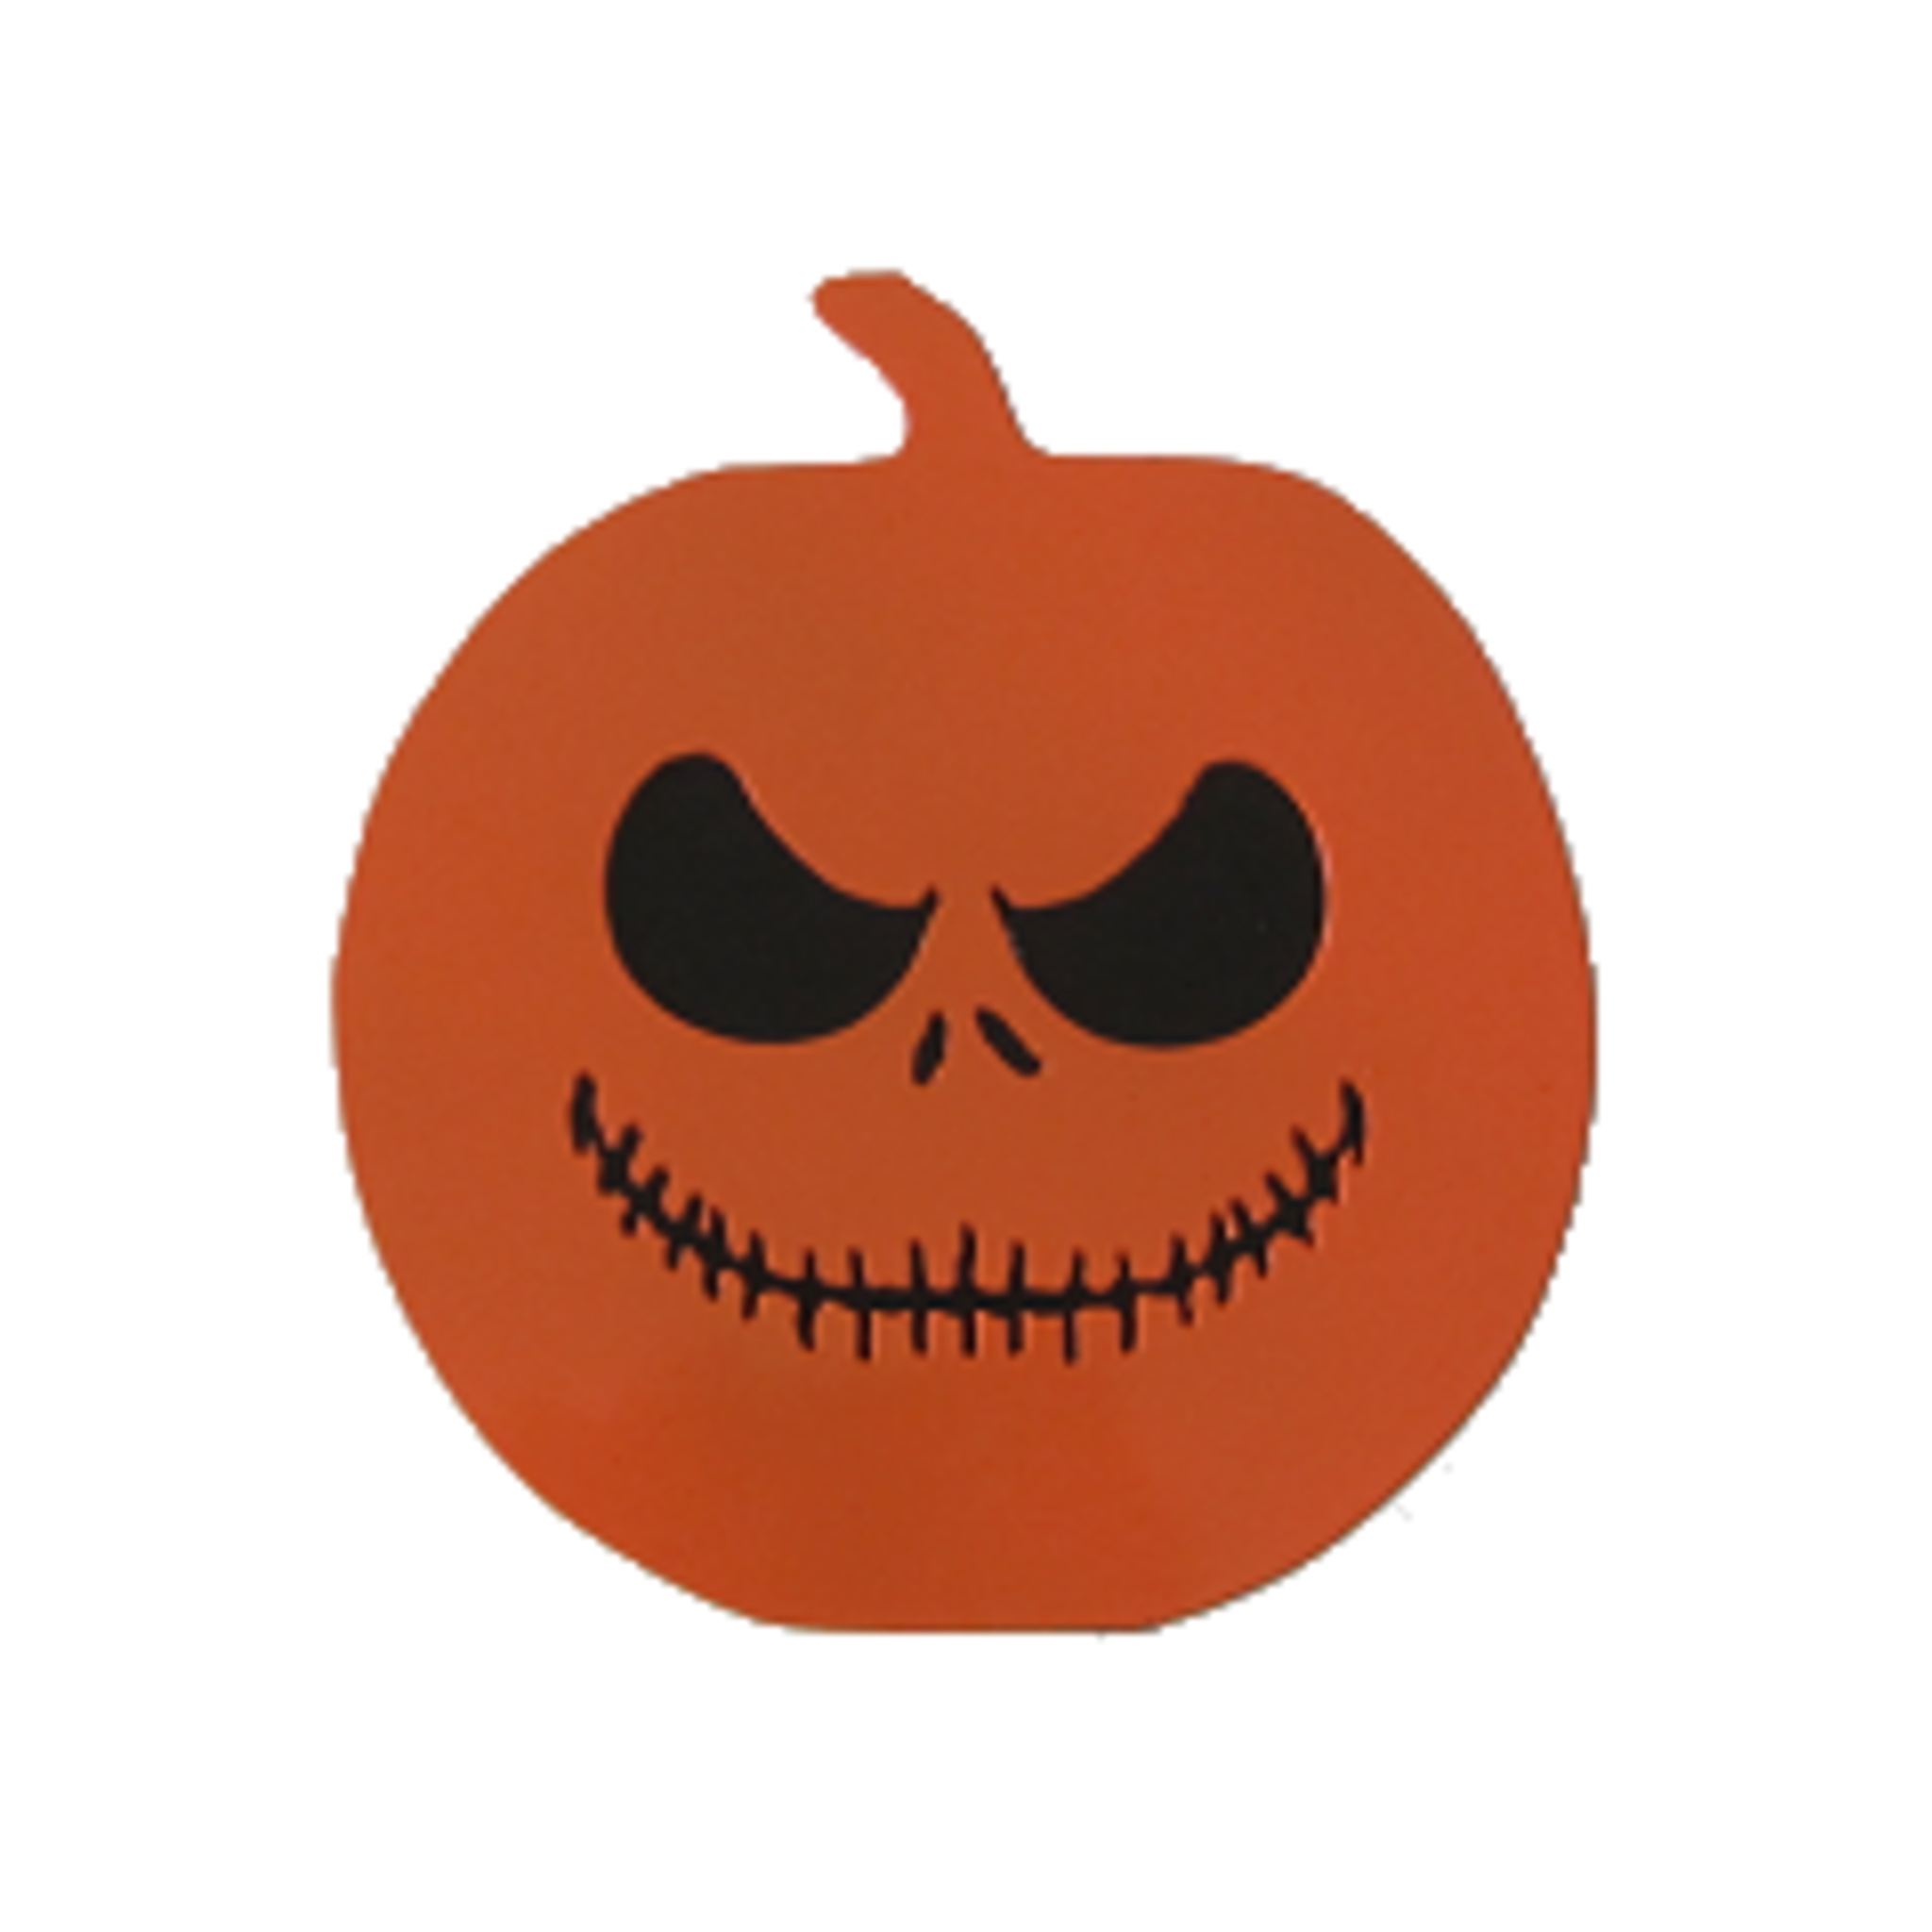 Halloween Pumpkin Trailer Hitch Cover - Metalhead Art & Design, LLC 